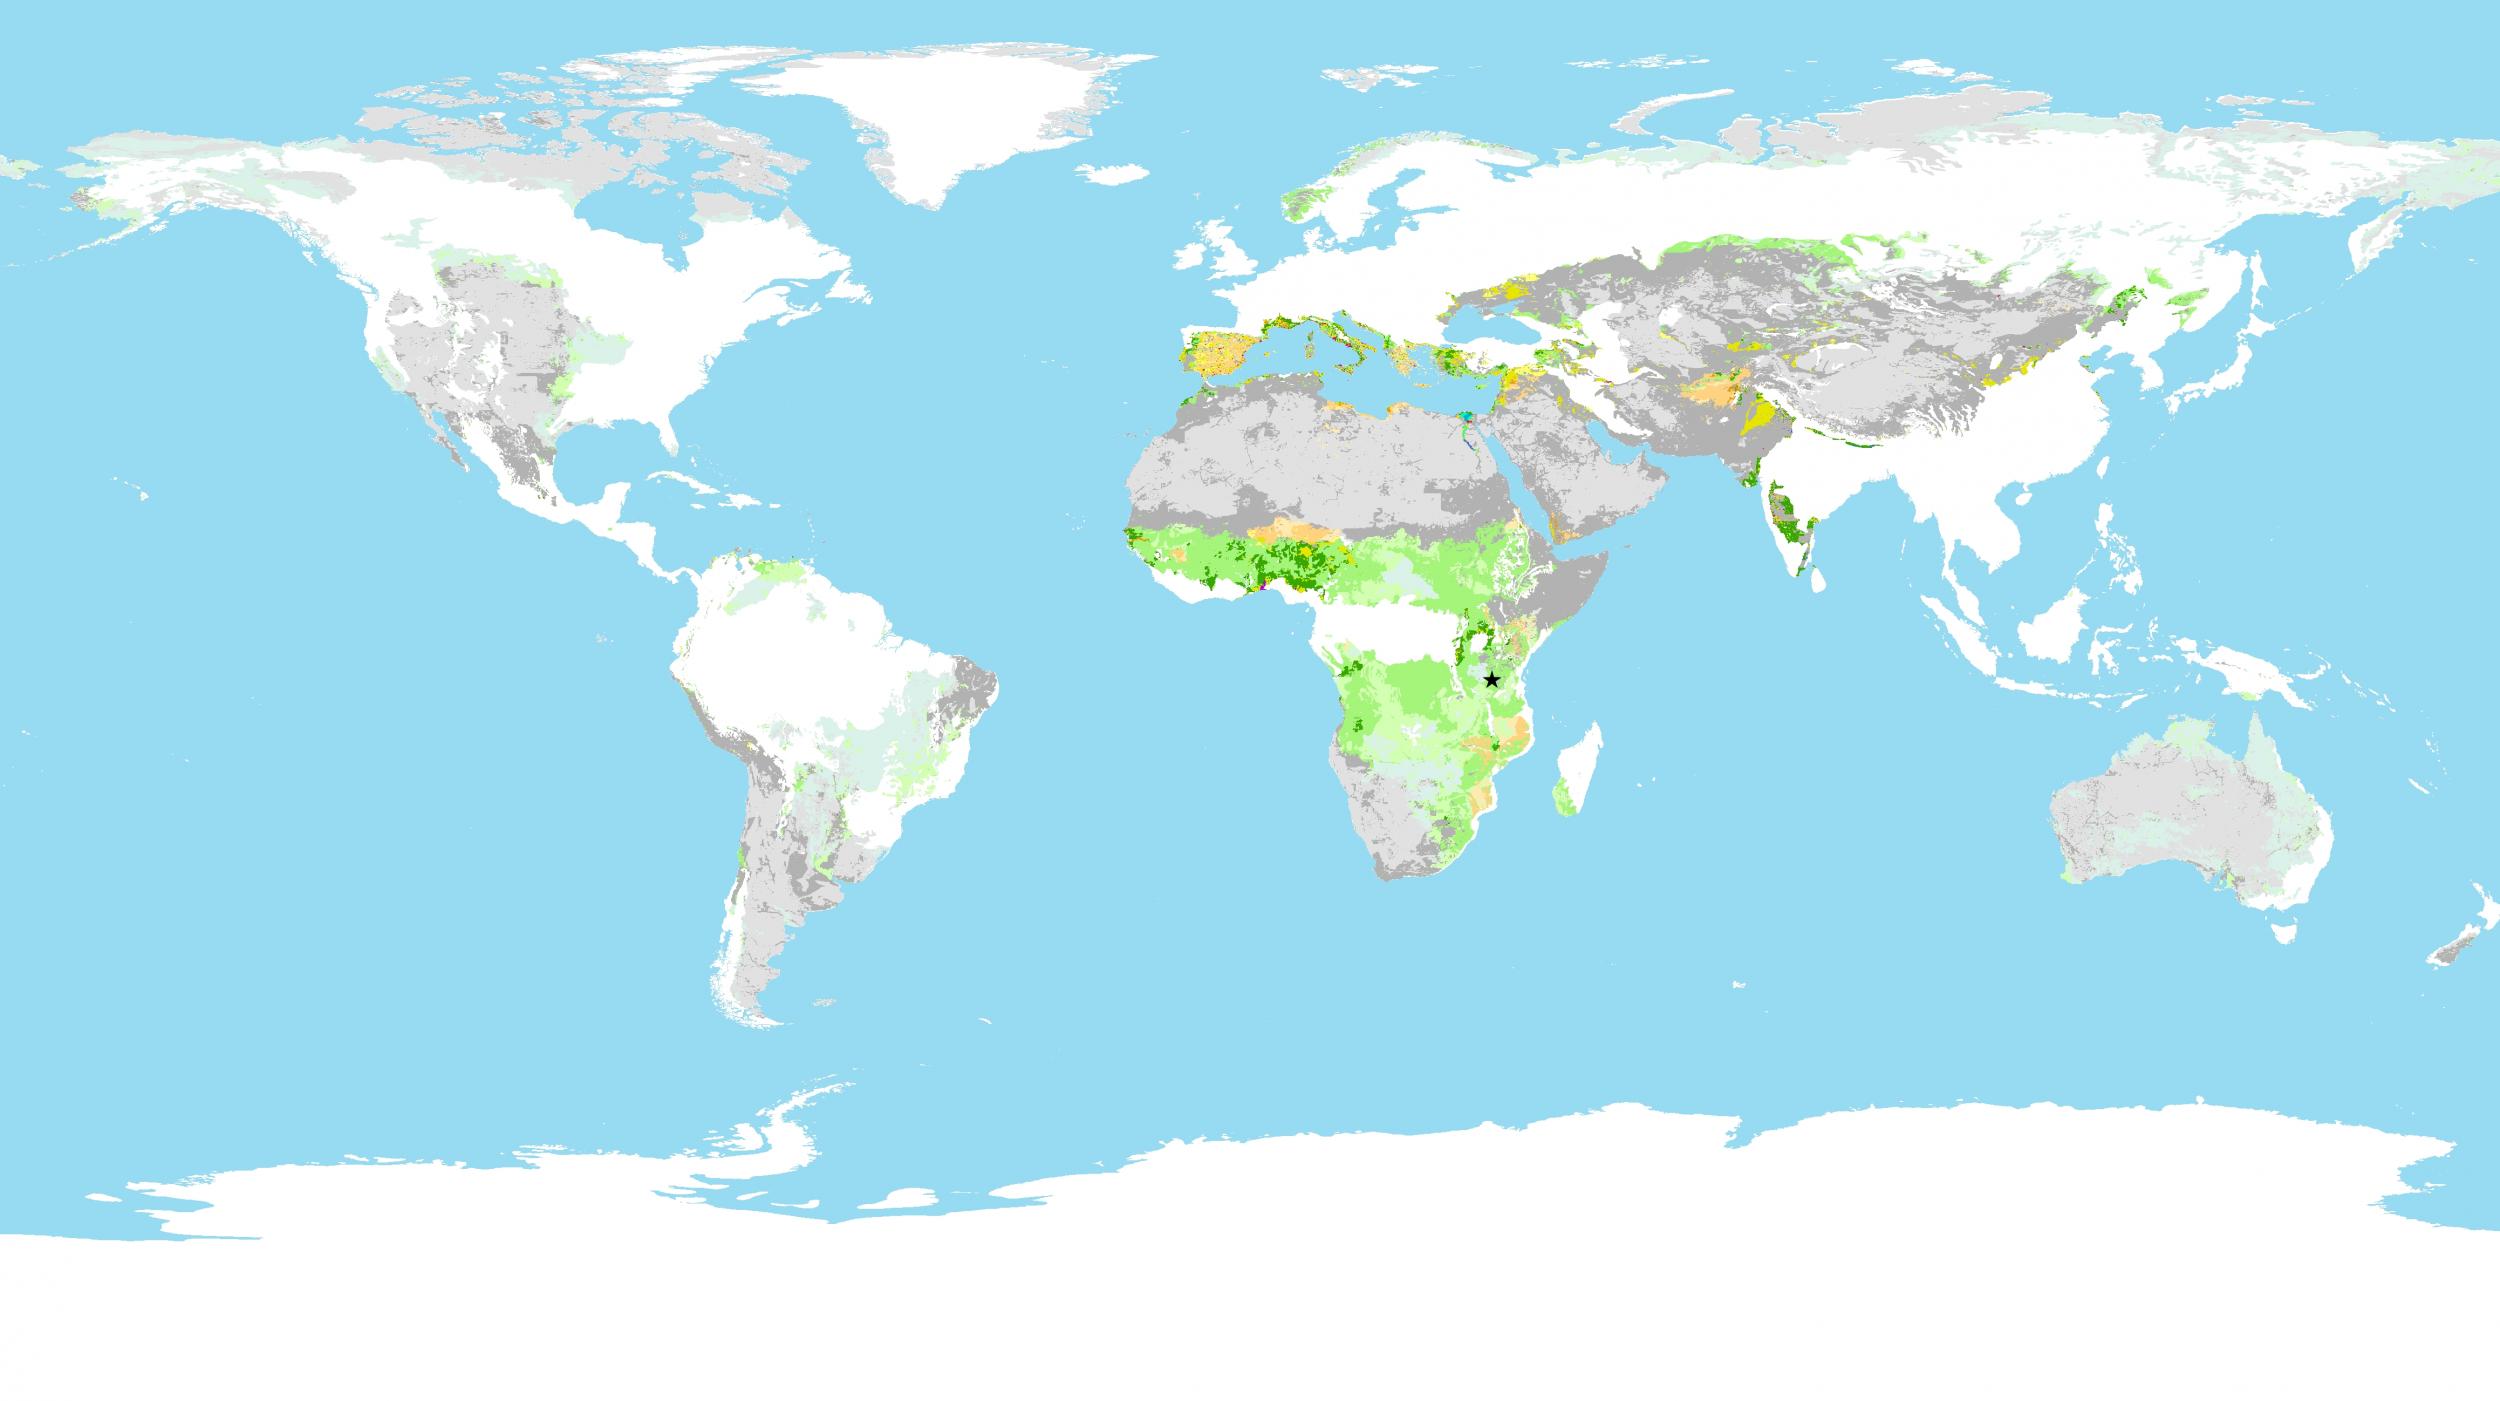 Anthropogenic biomes found in rangelands globally (Year 1700)